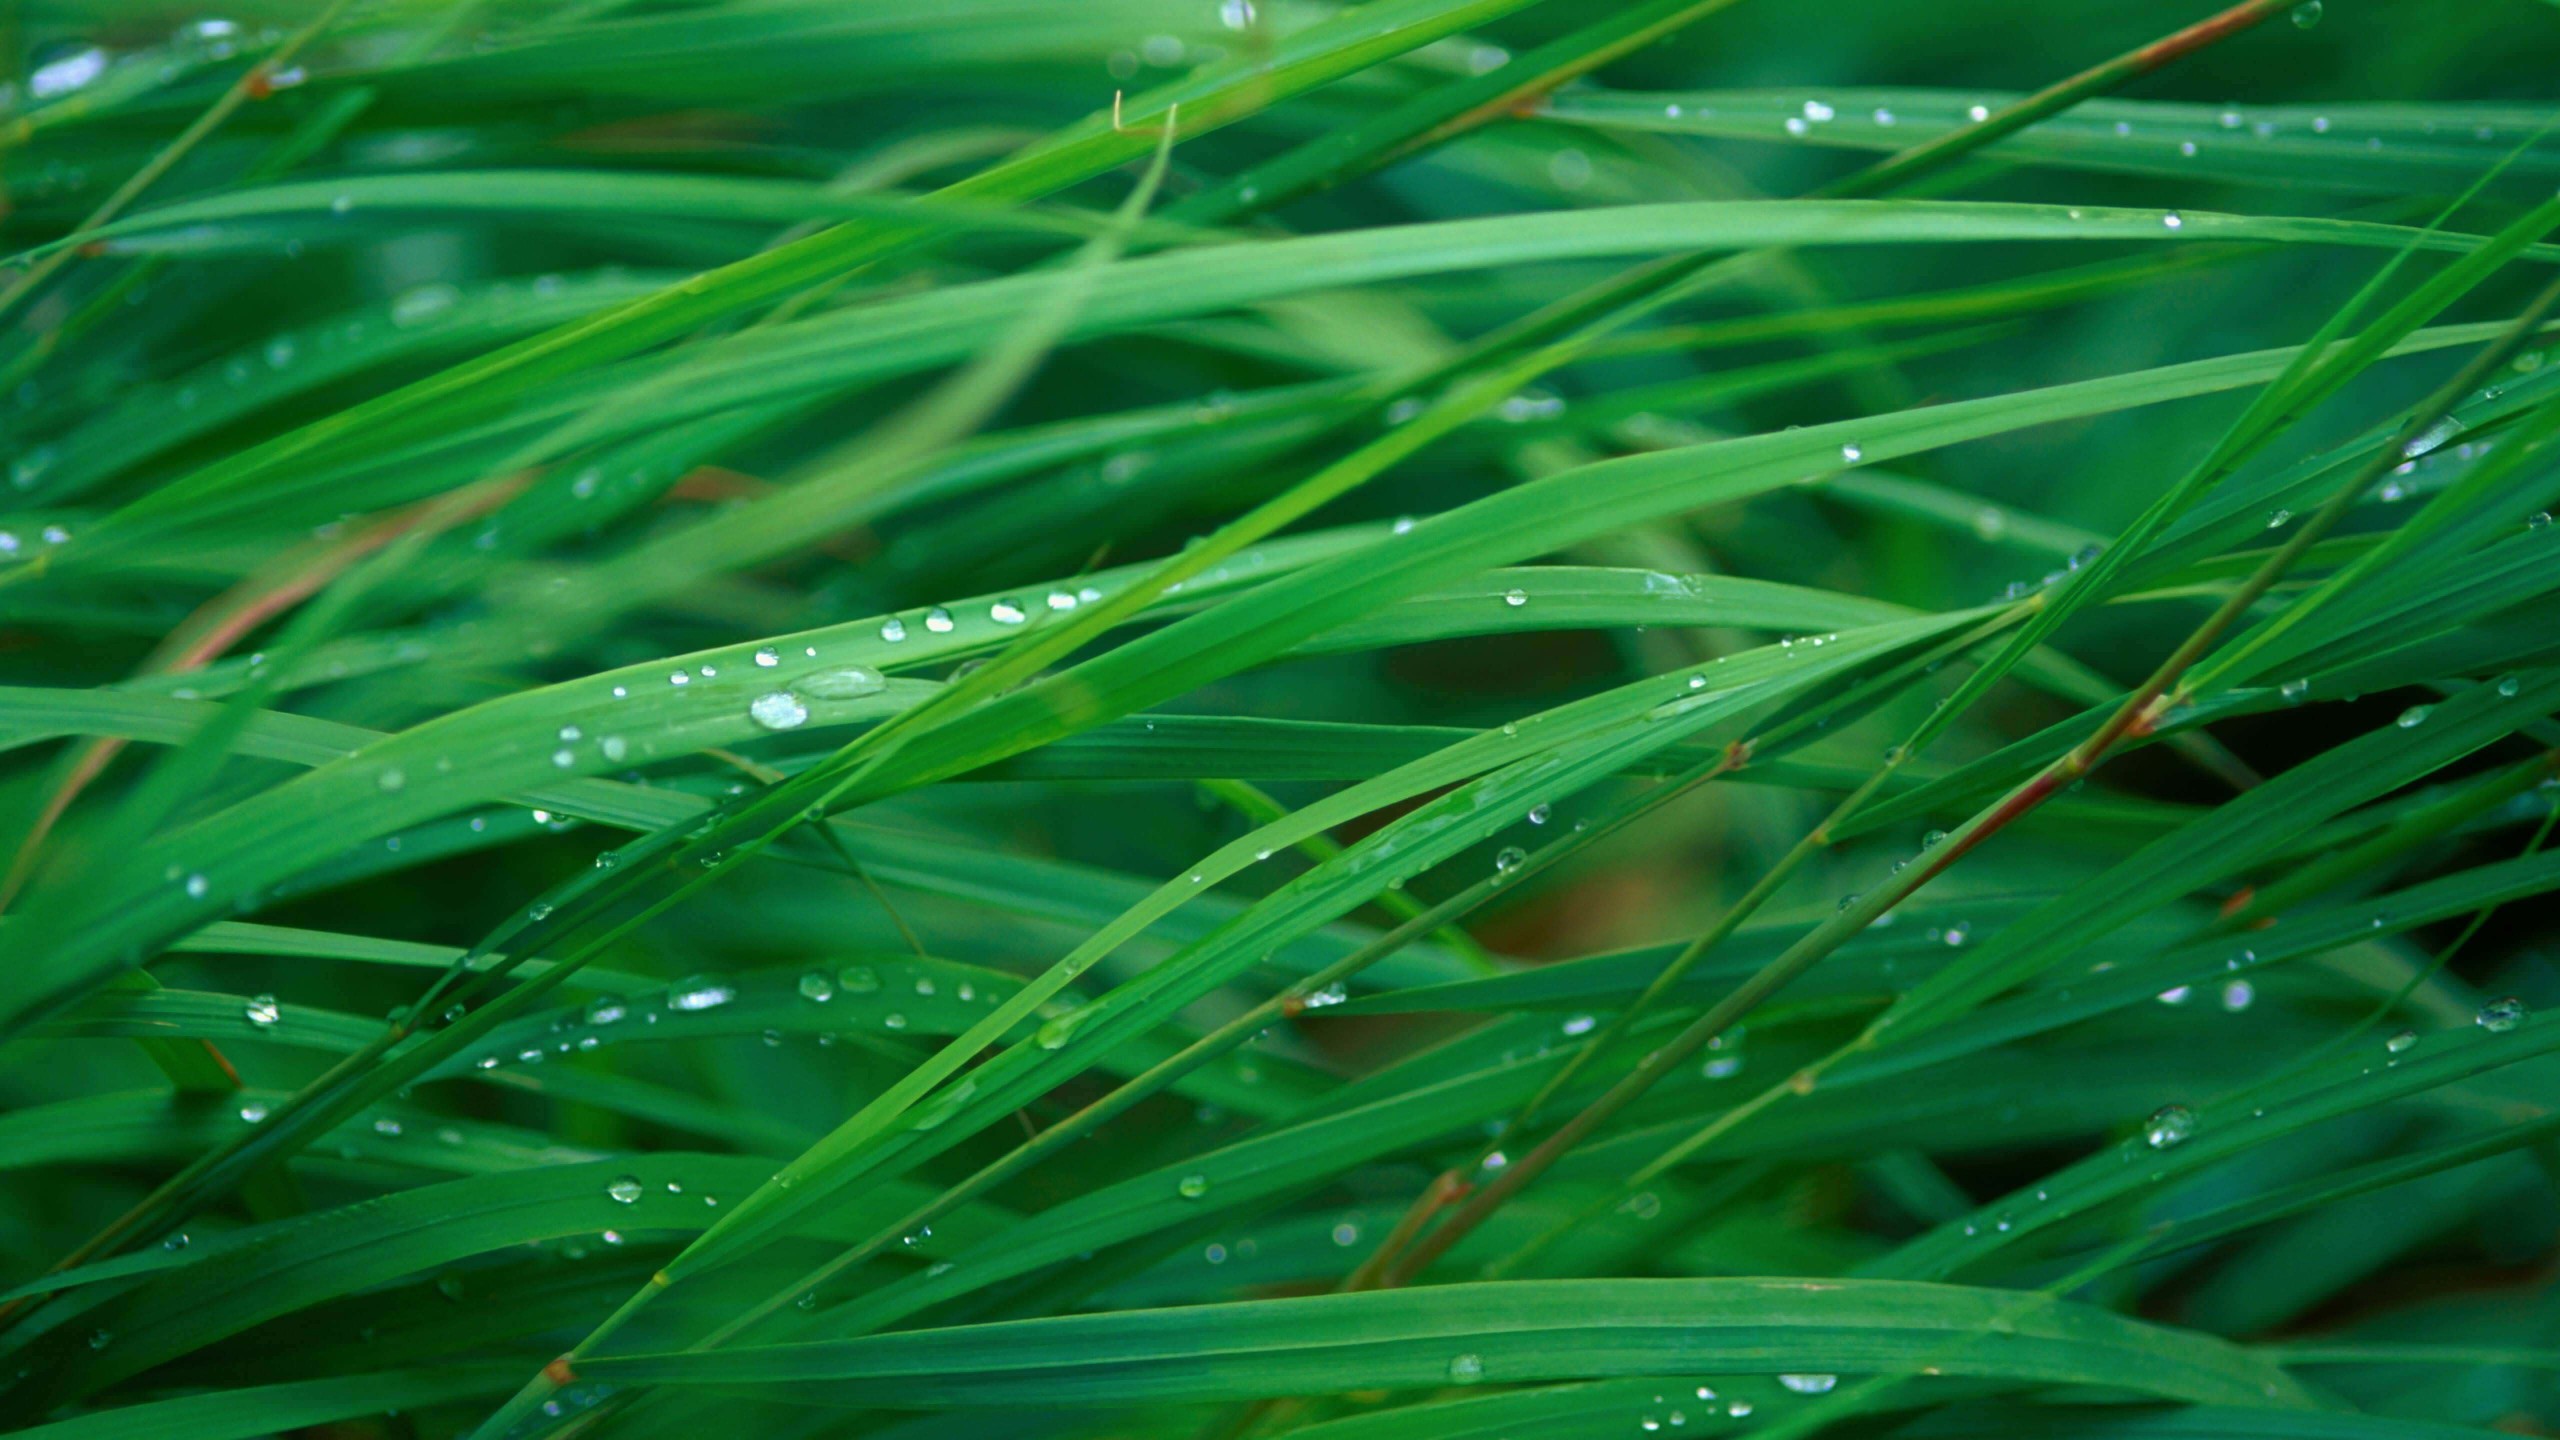 Green Blades Of Grass Wallpaper for Desktop 2560x1440